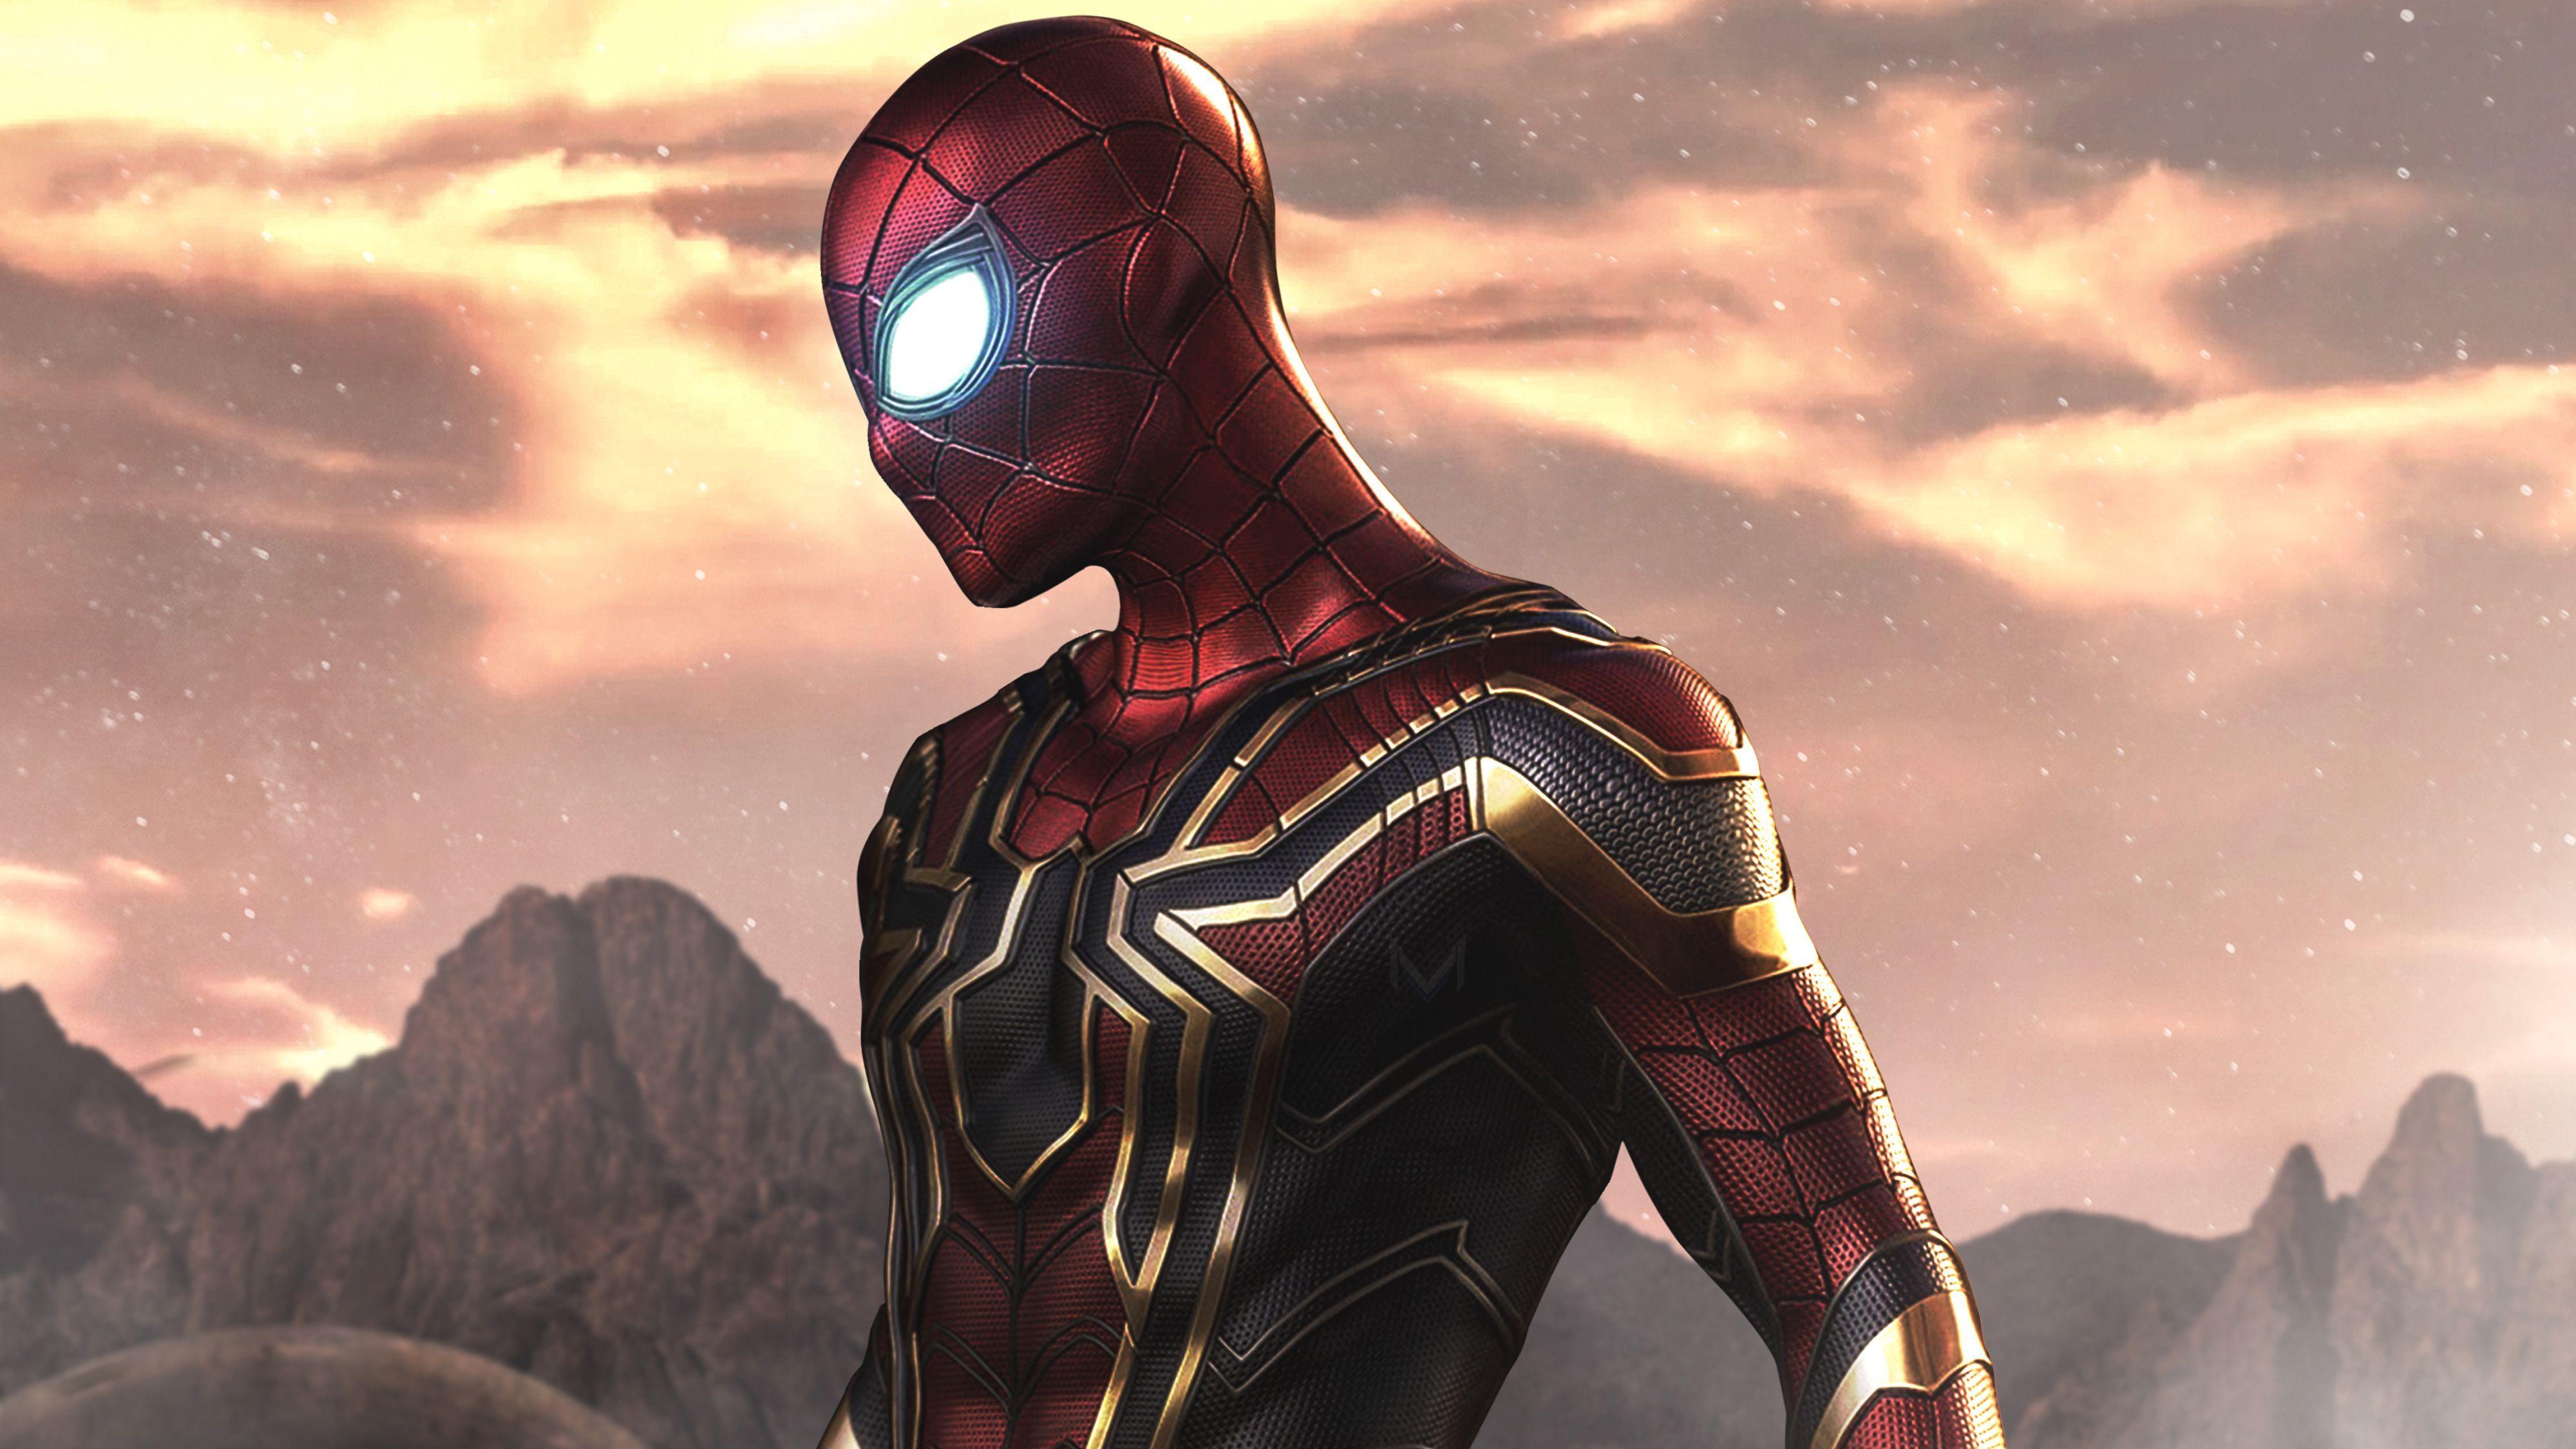 Iron Spiderman Wallpapers - Top Những Hình Ảnh Đẹp